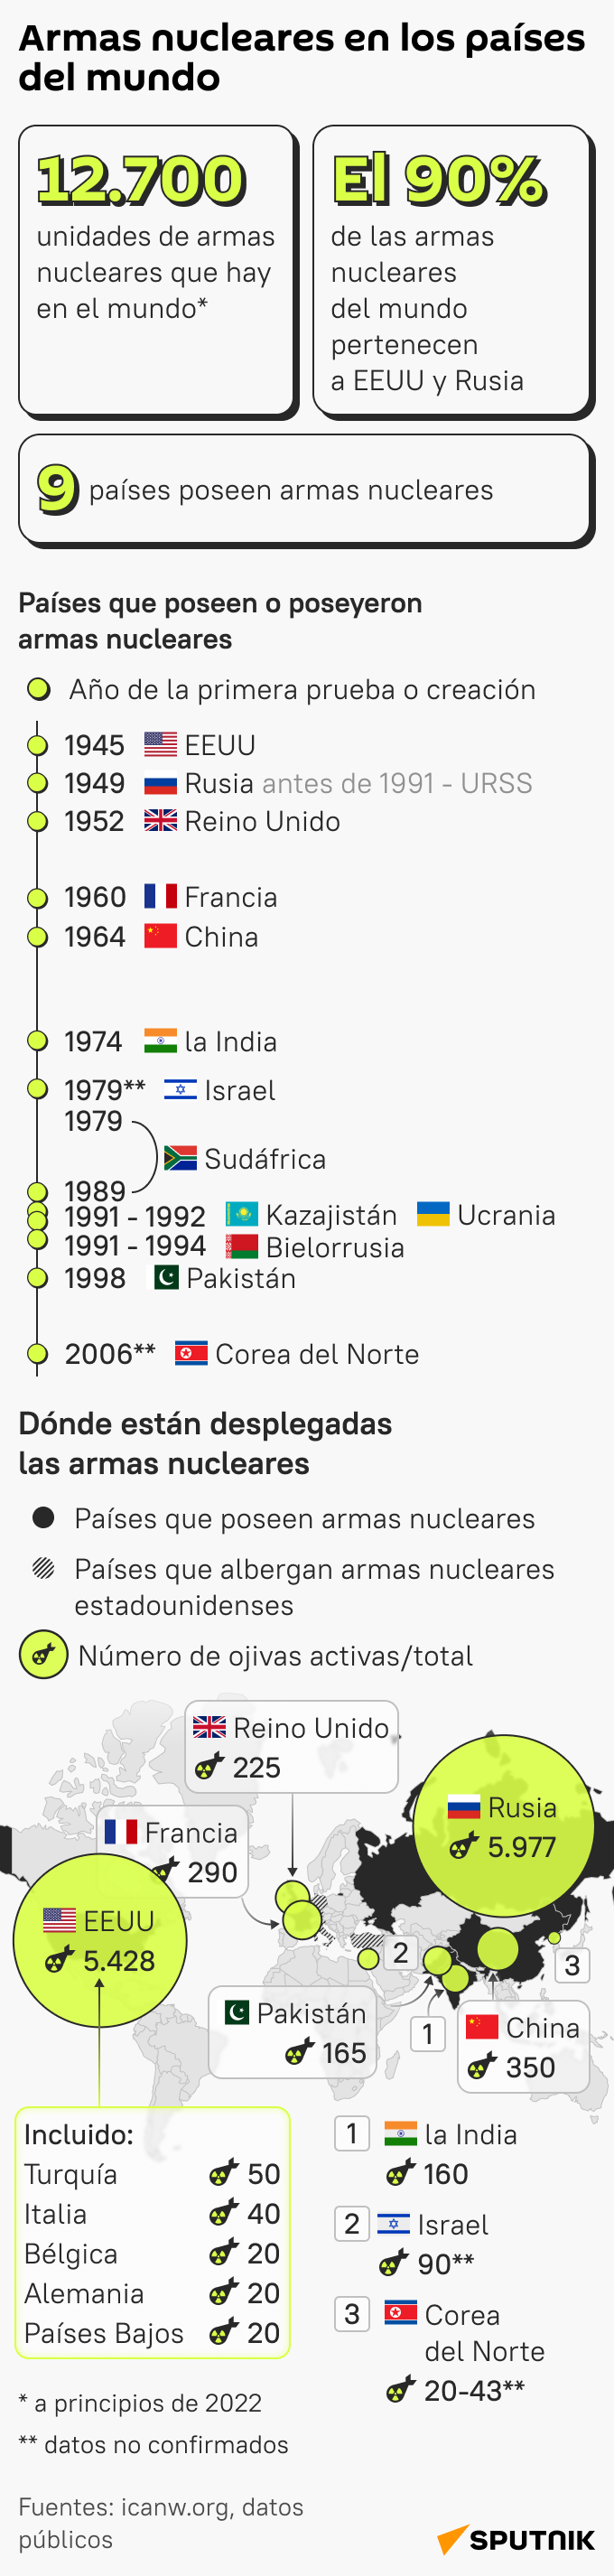 ¿Qué países poseen armas nucleares y cuántas unidades tienen? mob - Sputnik Mundo